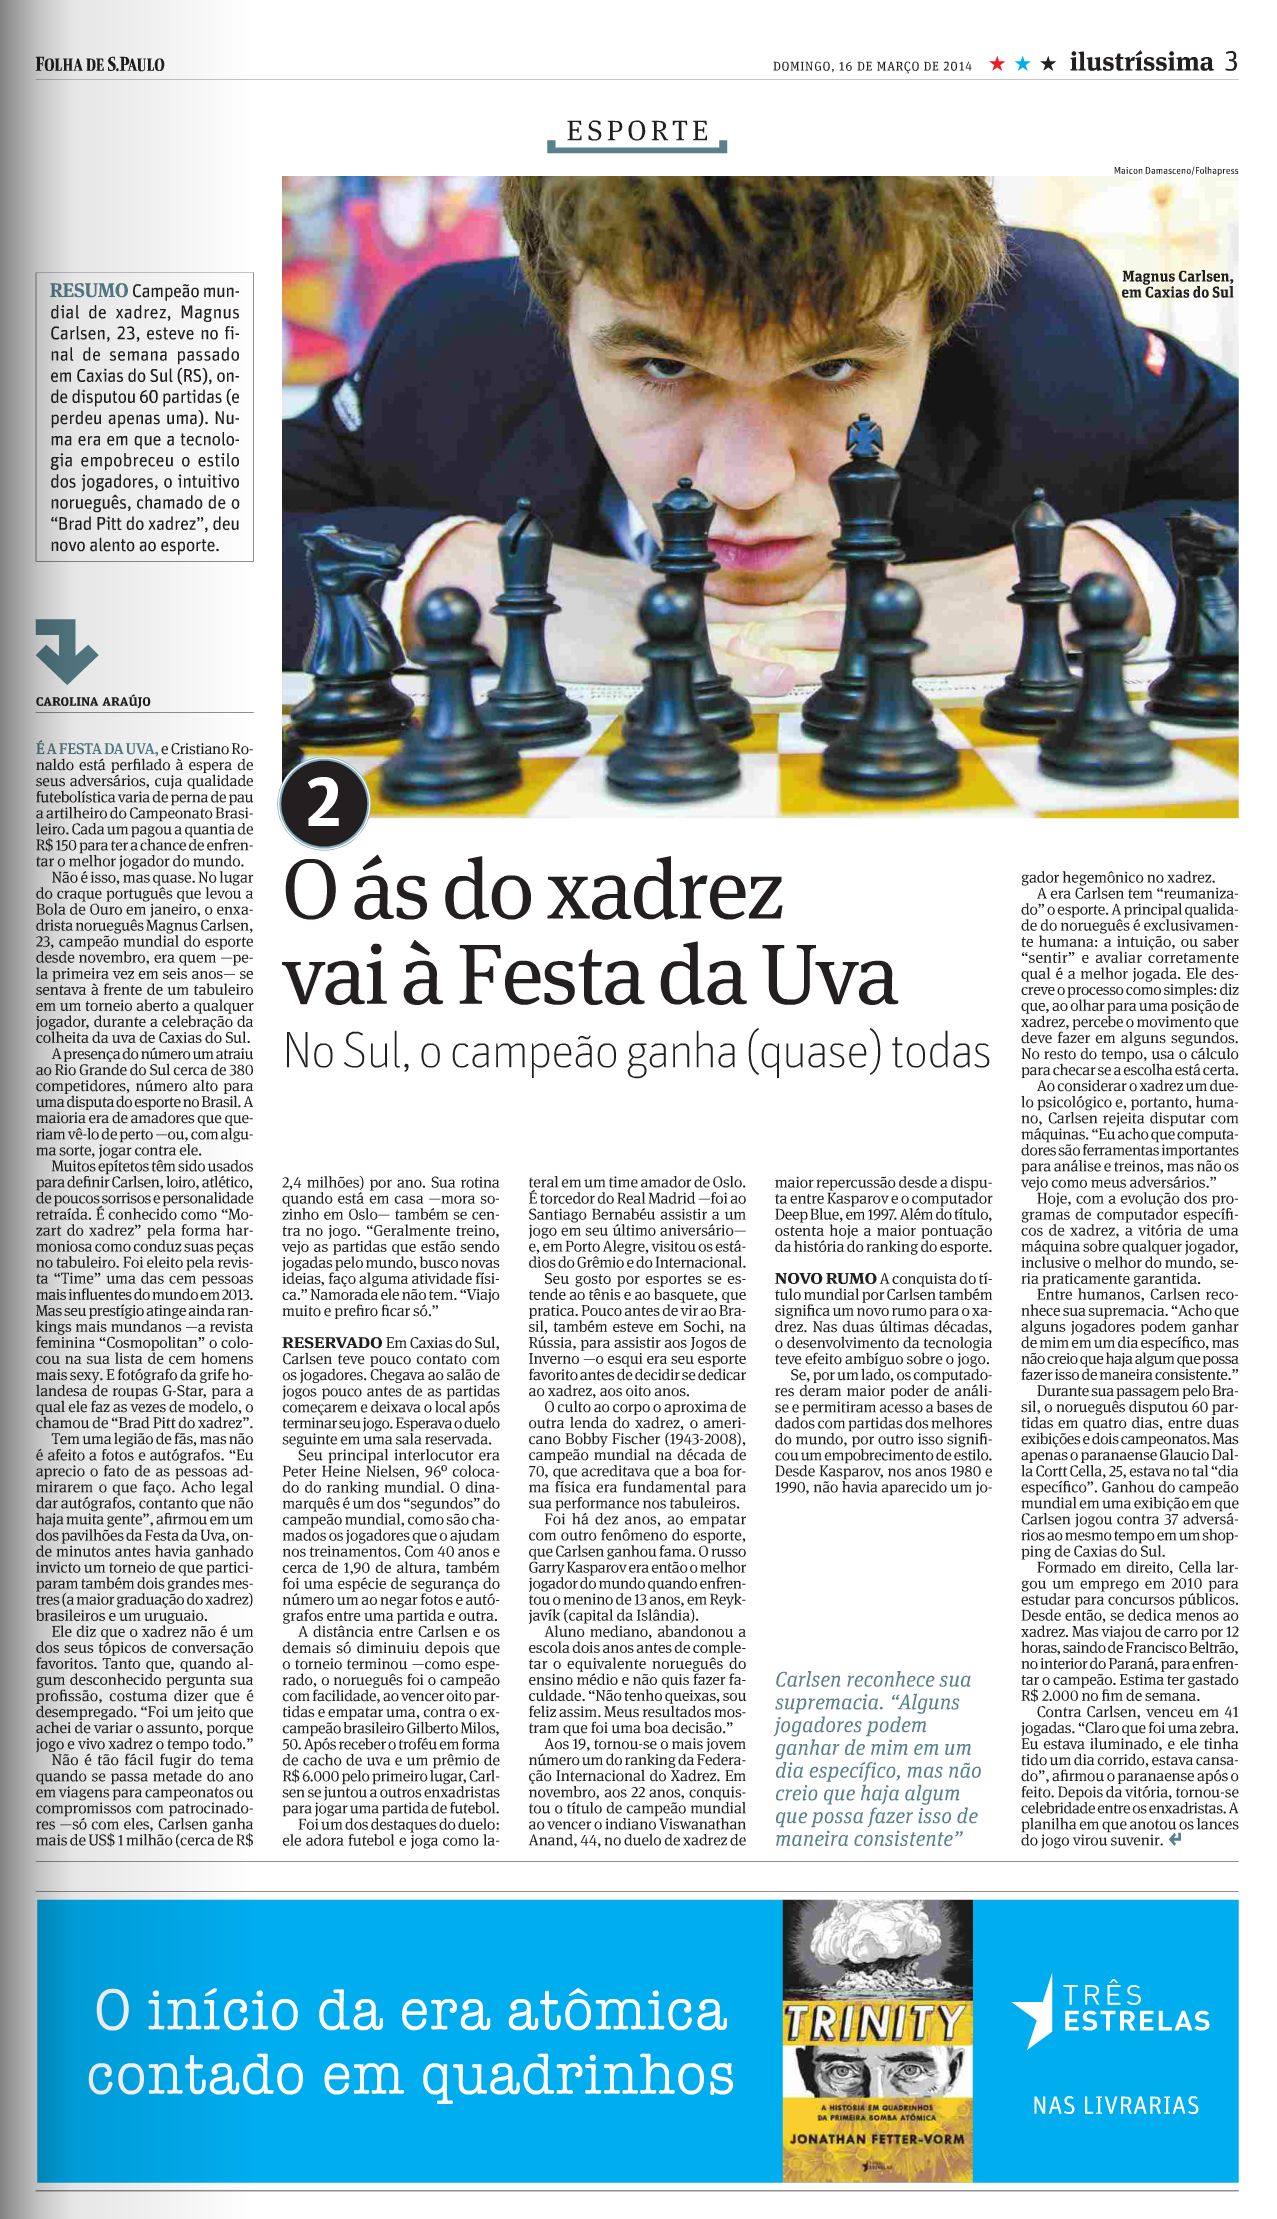 MAGNUS CARLSEN – CONFIRMADO em Caxias do Sul / RS no Internacional de  Xadrez da Festa da Uva